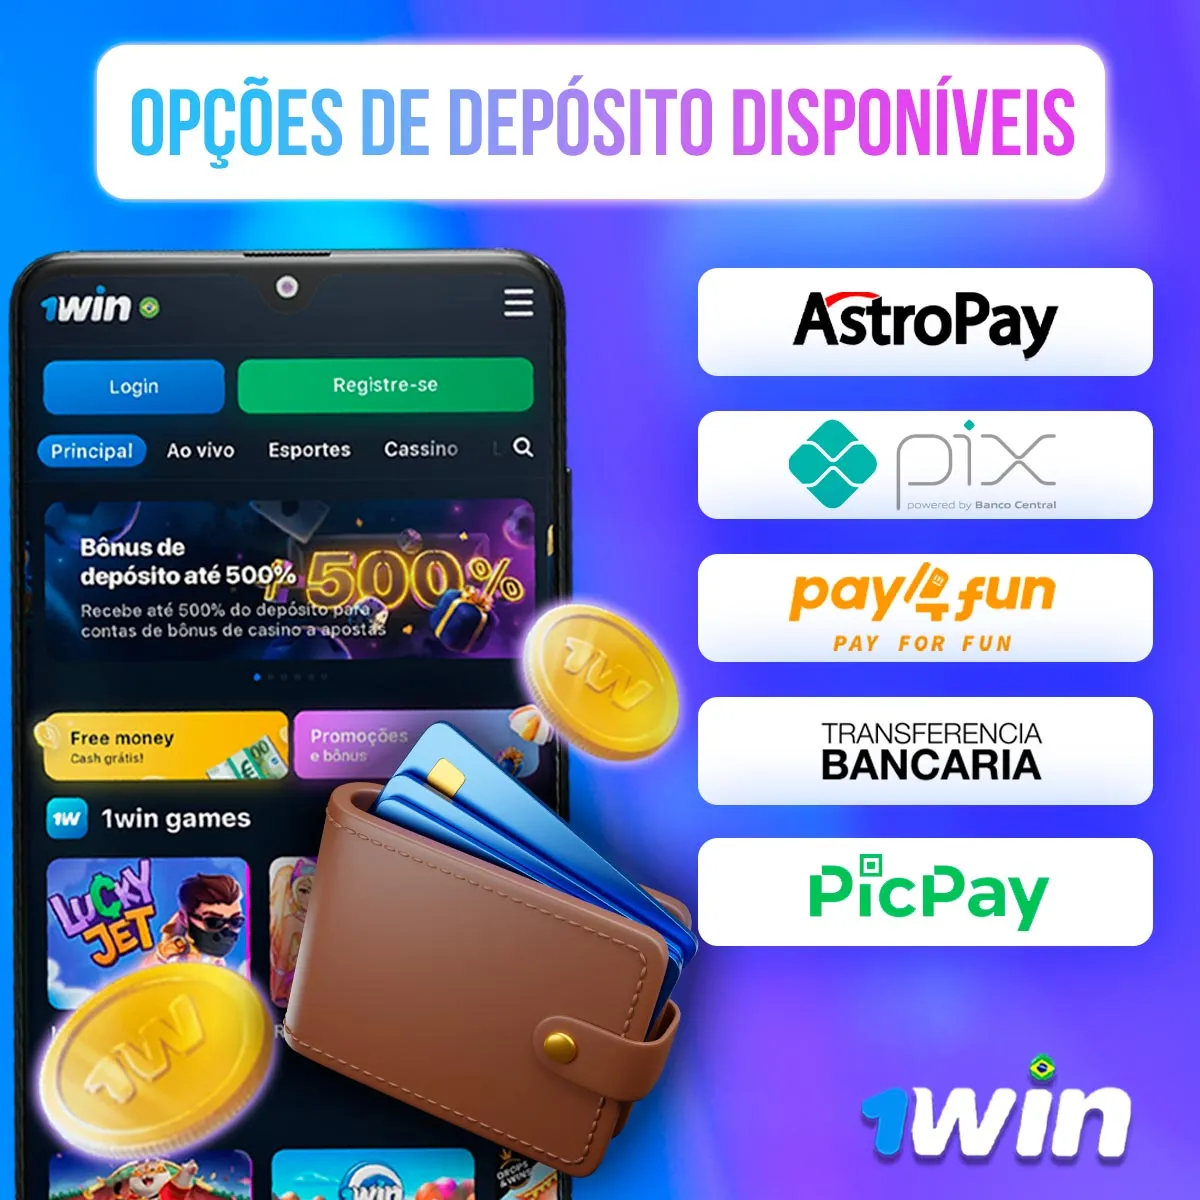 Opções de depósito disponíveis da casa de apostas 1win no mercado brasileiro